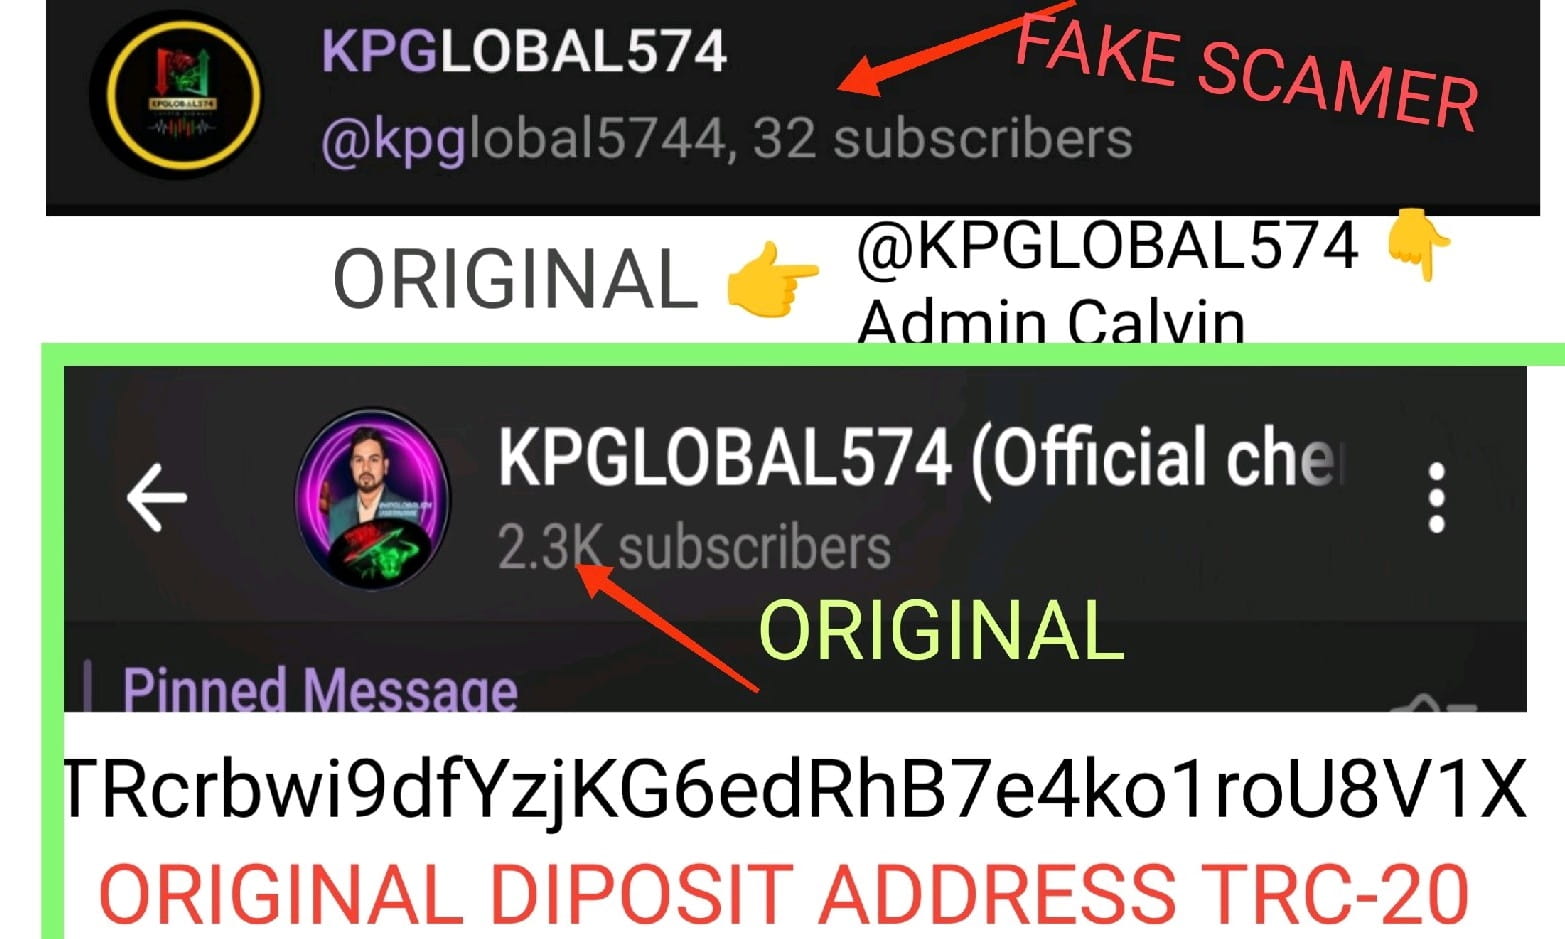 beware of Scamer only original KPGLOBAL574 admin Calvin check ✅